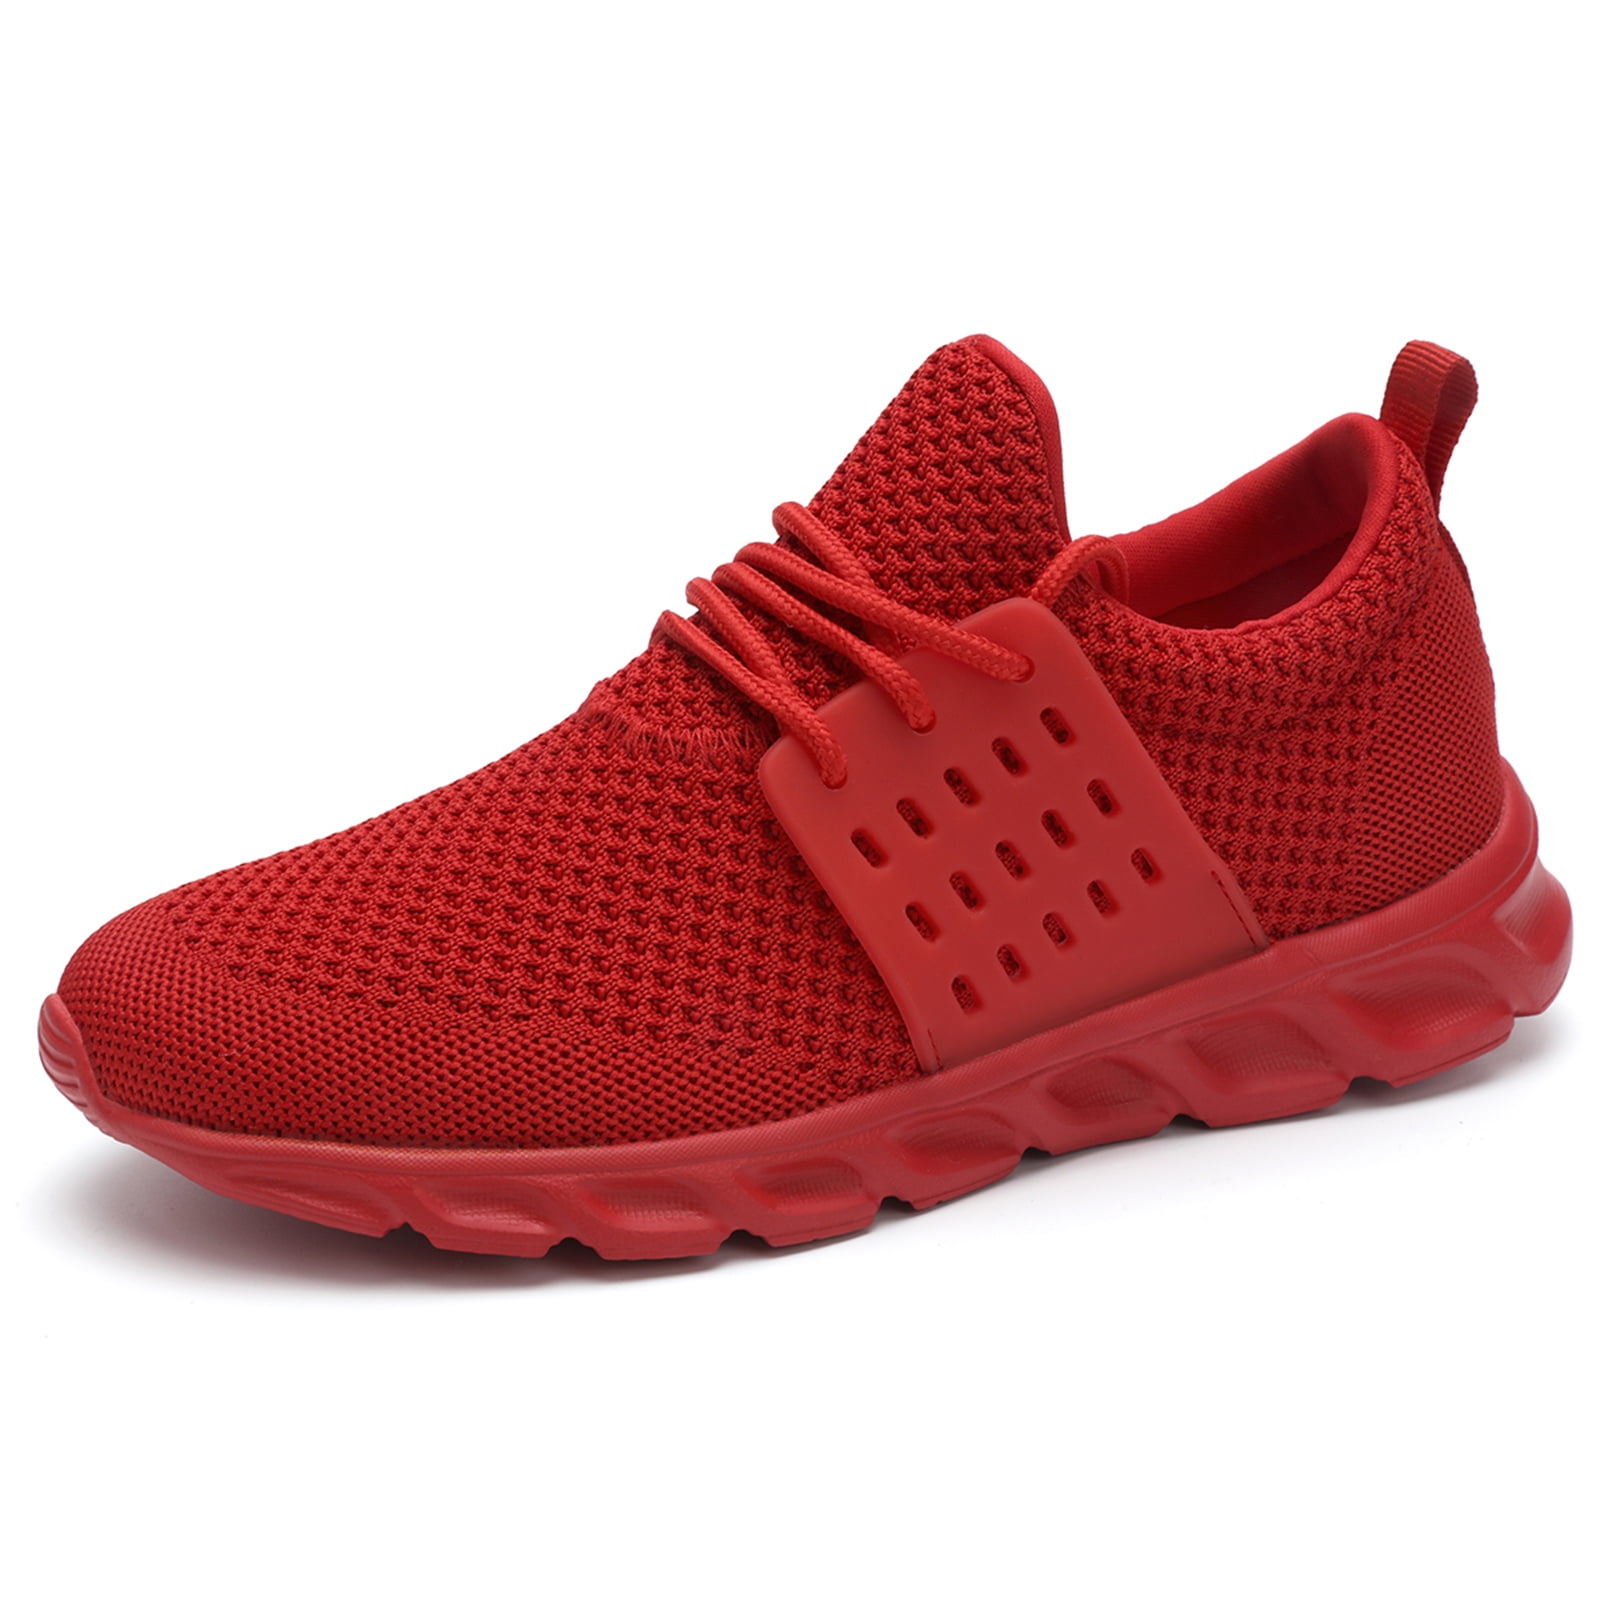 DaoLxi Women's Sneakers Walking Running Shoes Red Size 7.0 - Walmart.com